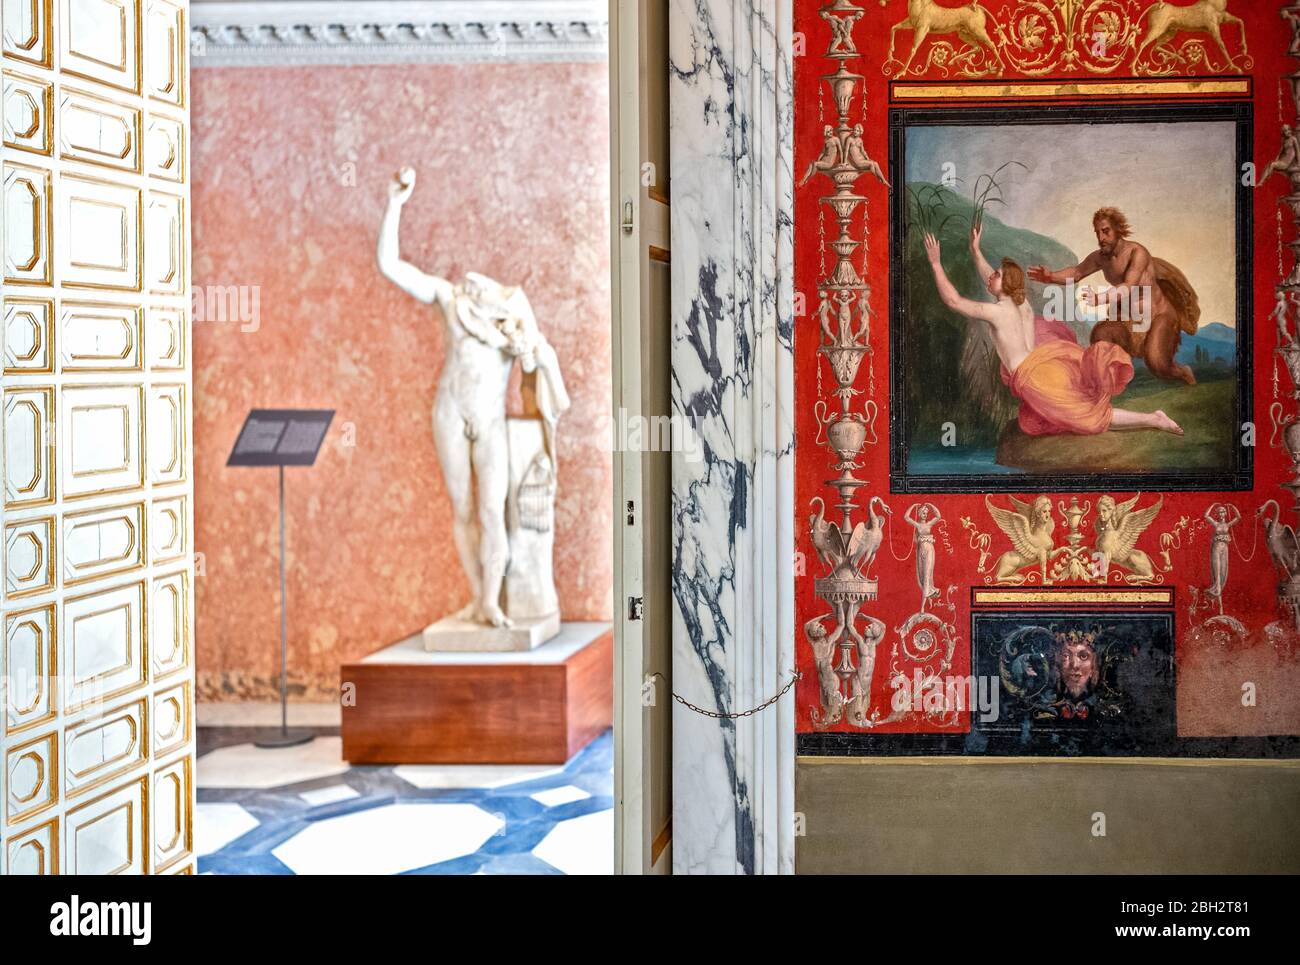 Roma, Italia - 20 agosto 2017: Villa Torlonia, il grande bagno con figure mitologiche di divinità Foto Stock